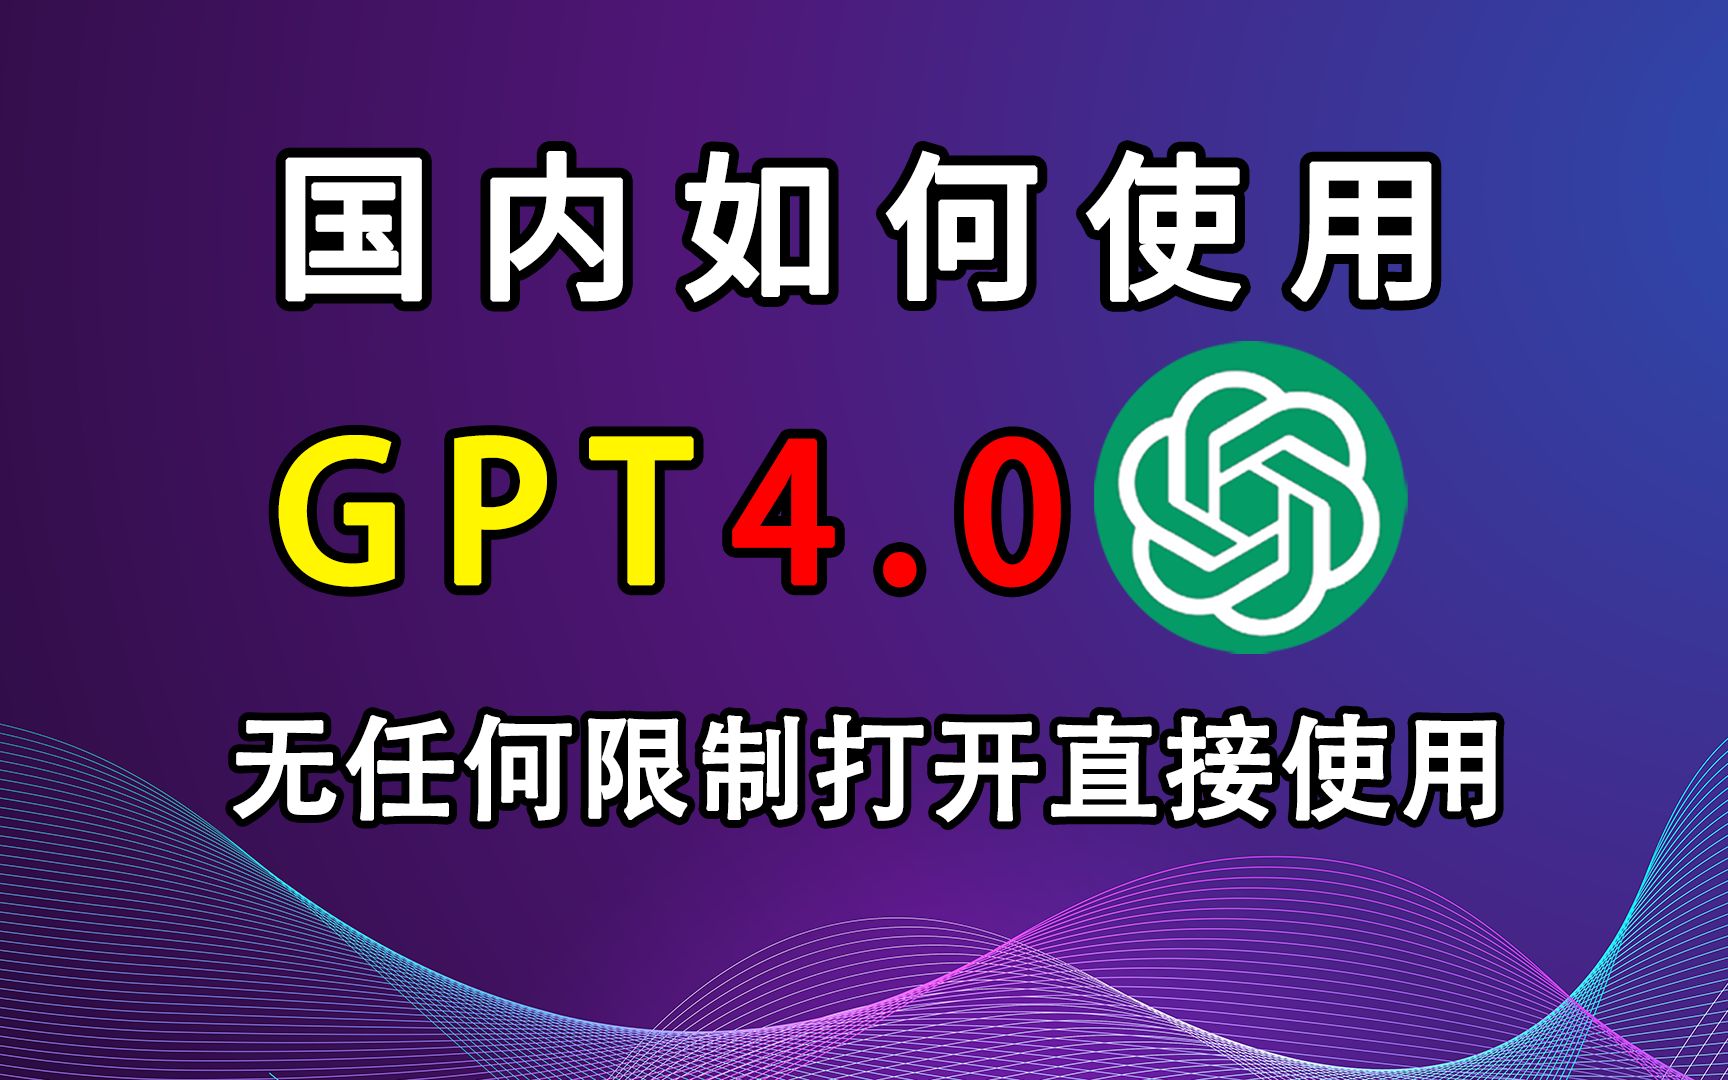 【国内使用】ChatGPT4.0免费使用教程，国内无任何限制，打开直接使用